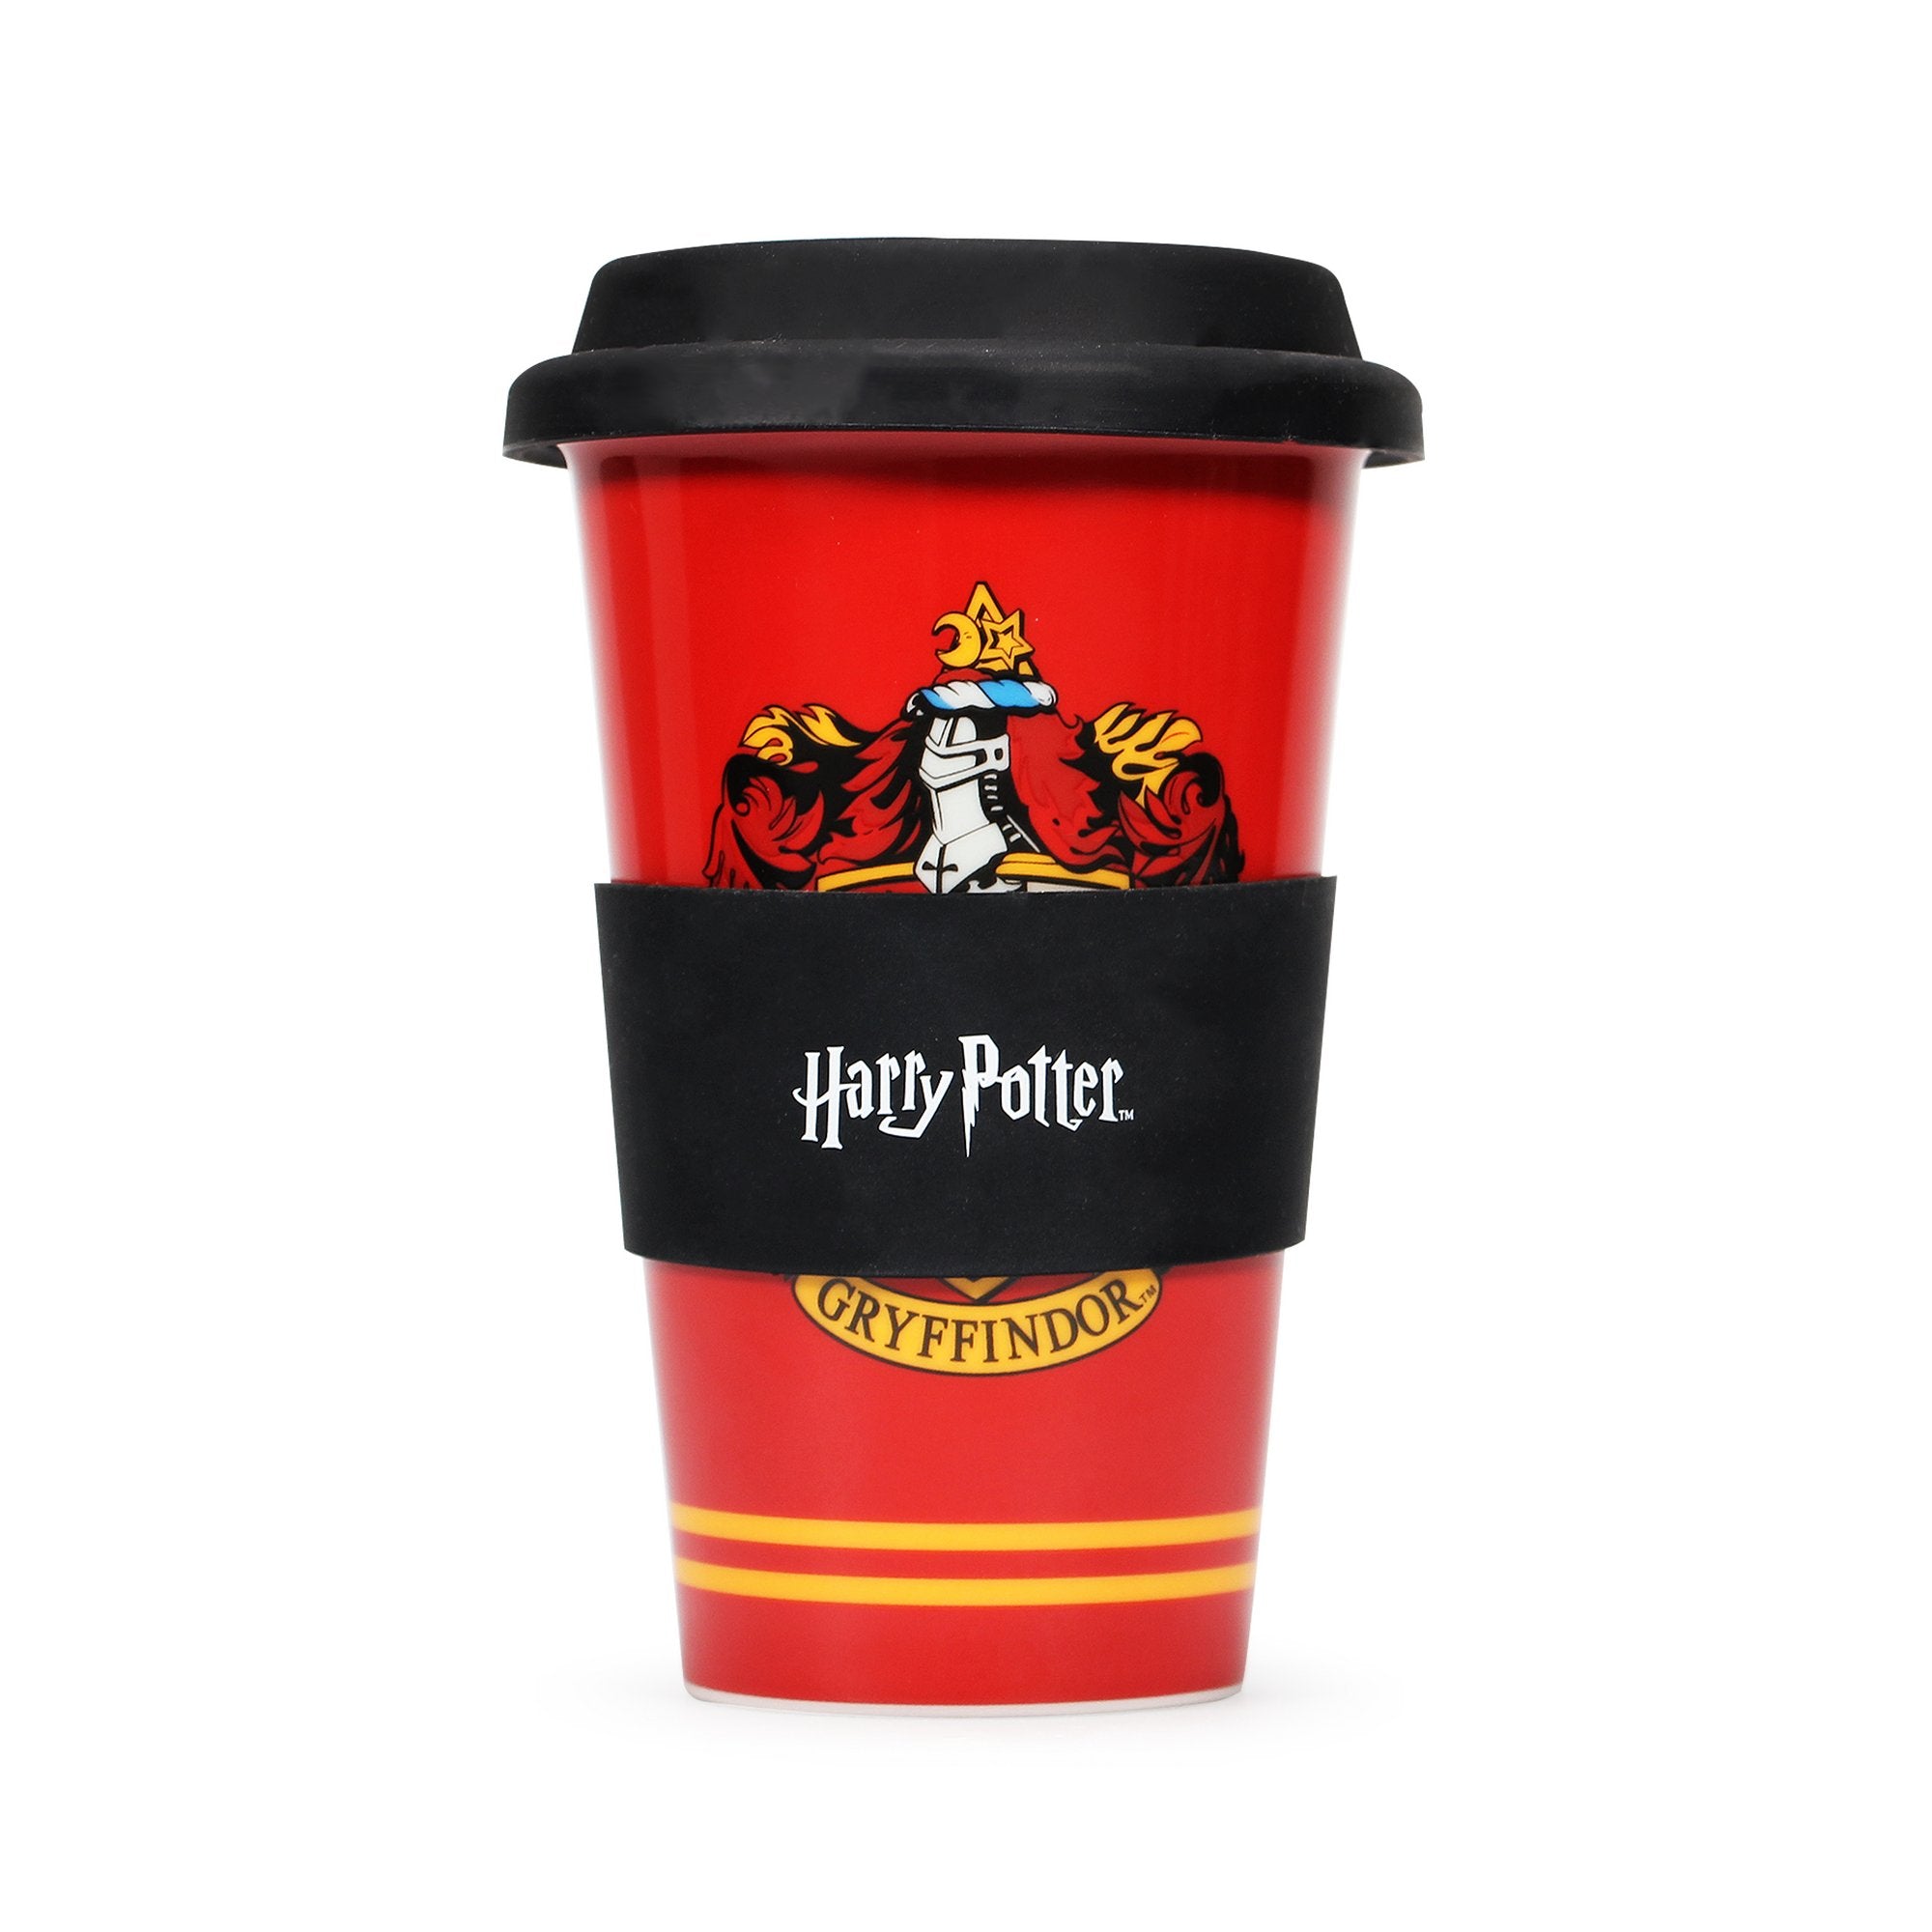 Harry Potter Gryffindor Ceramic Travel Mug